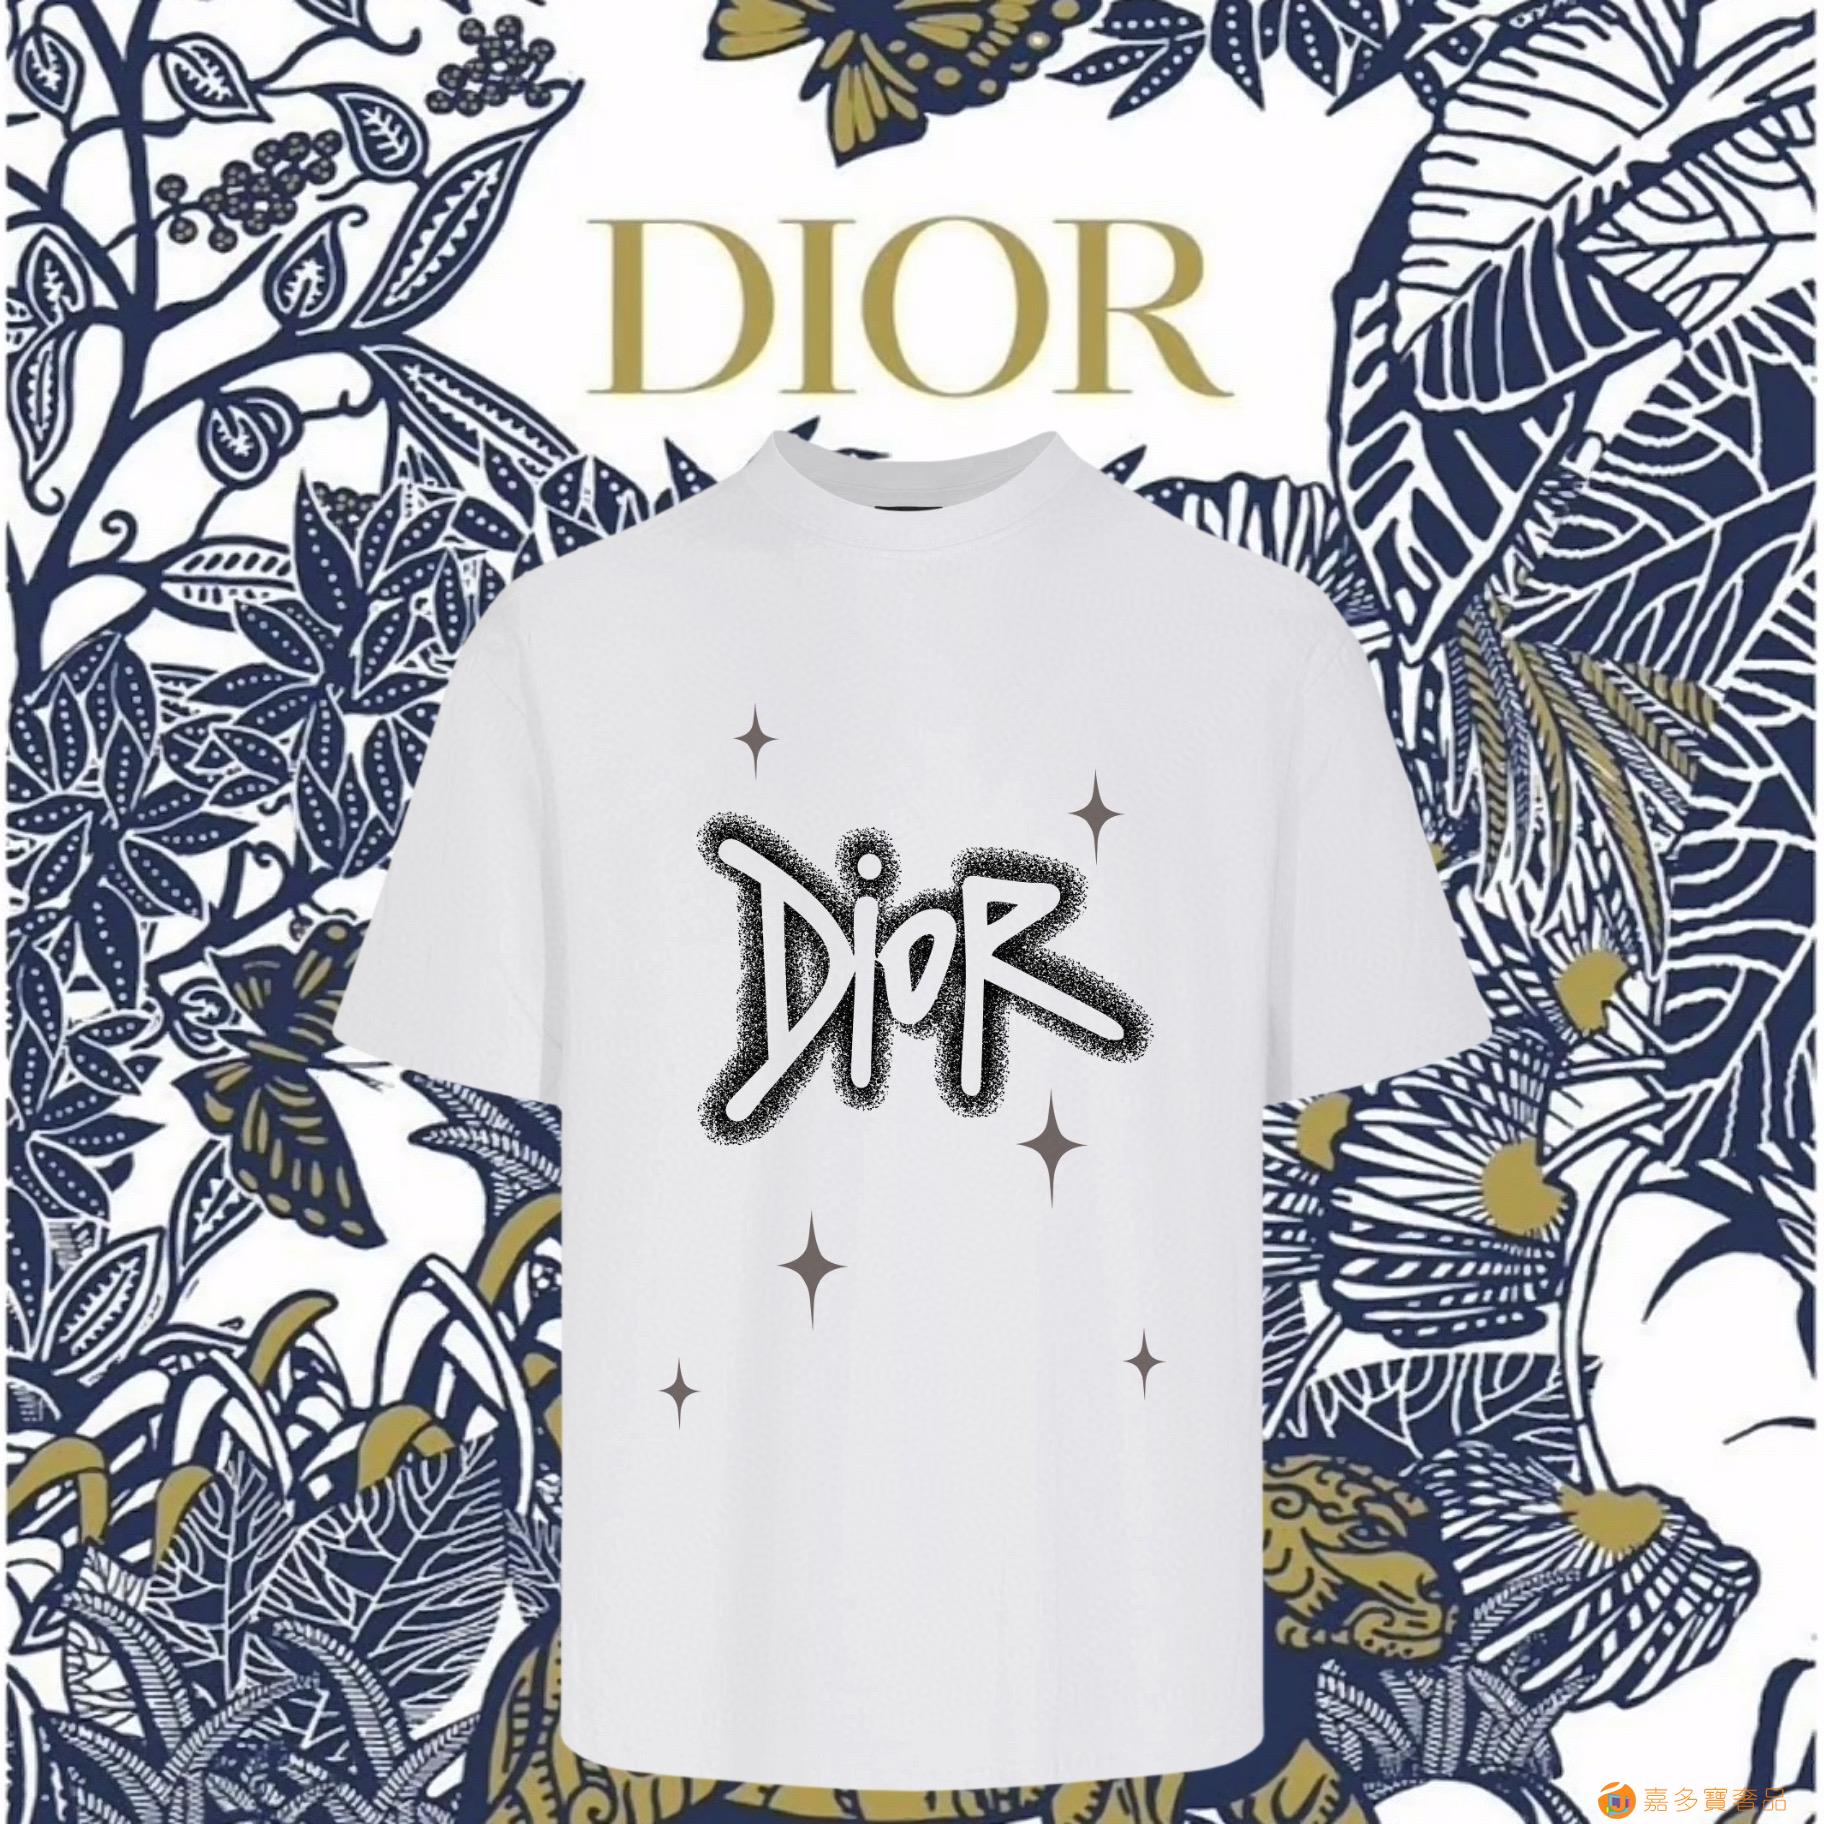 Dior迪奧 ss 大師親手設計潮牌新品印花圓領短袖T恤高仿a貨